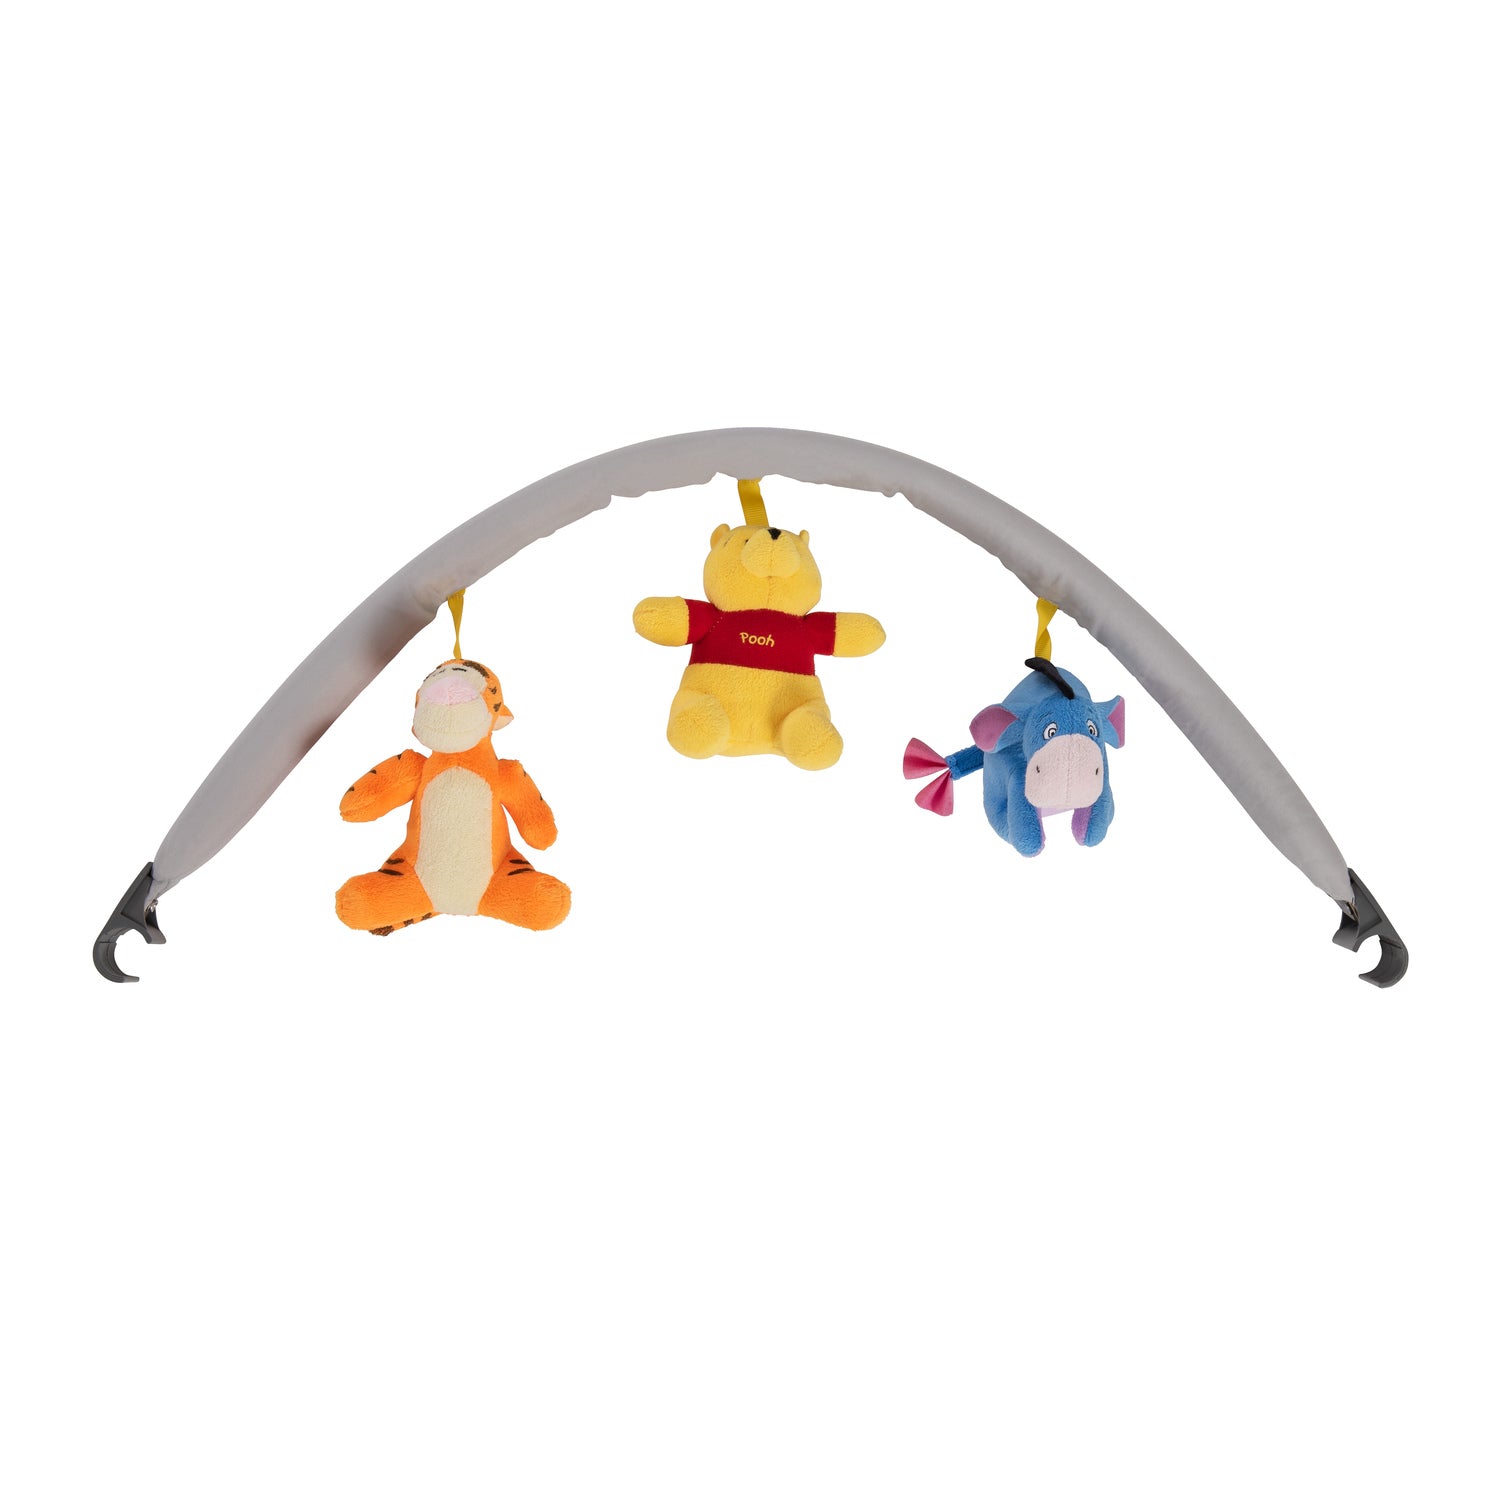 Disney - Dream'n Play Go travel Cot + Toybar (Pooh Cuddles)